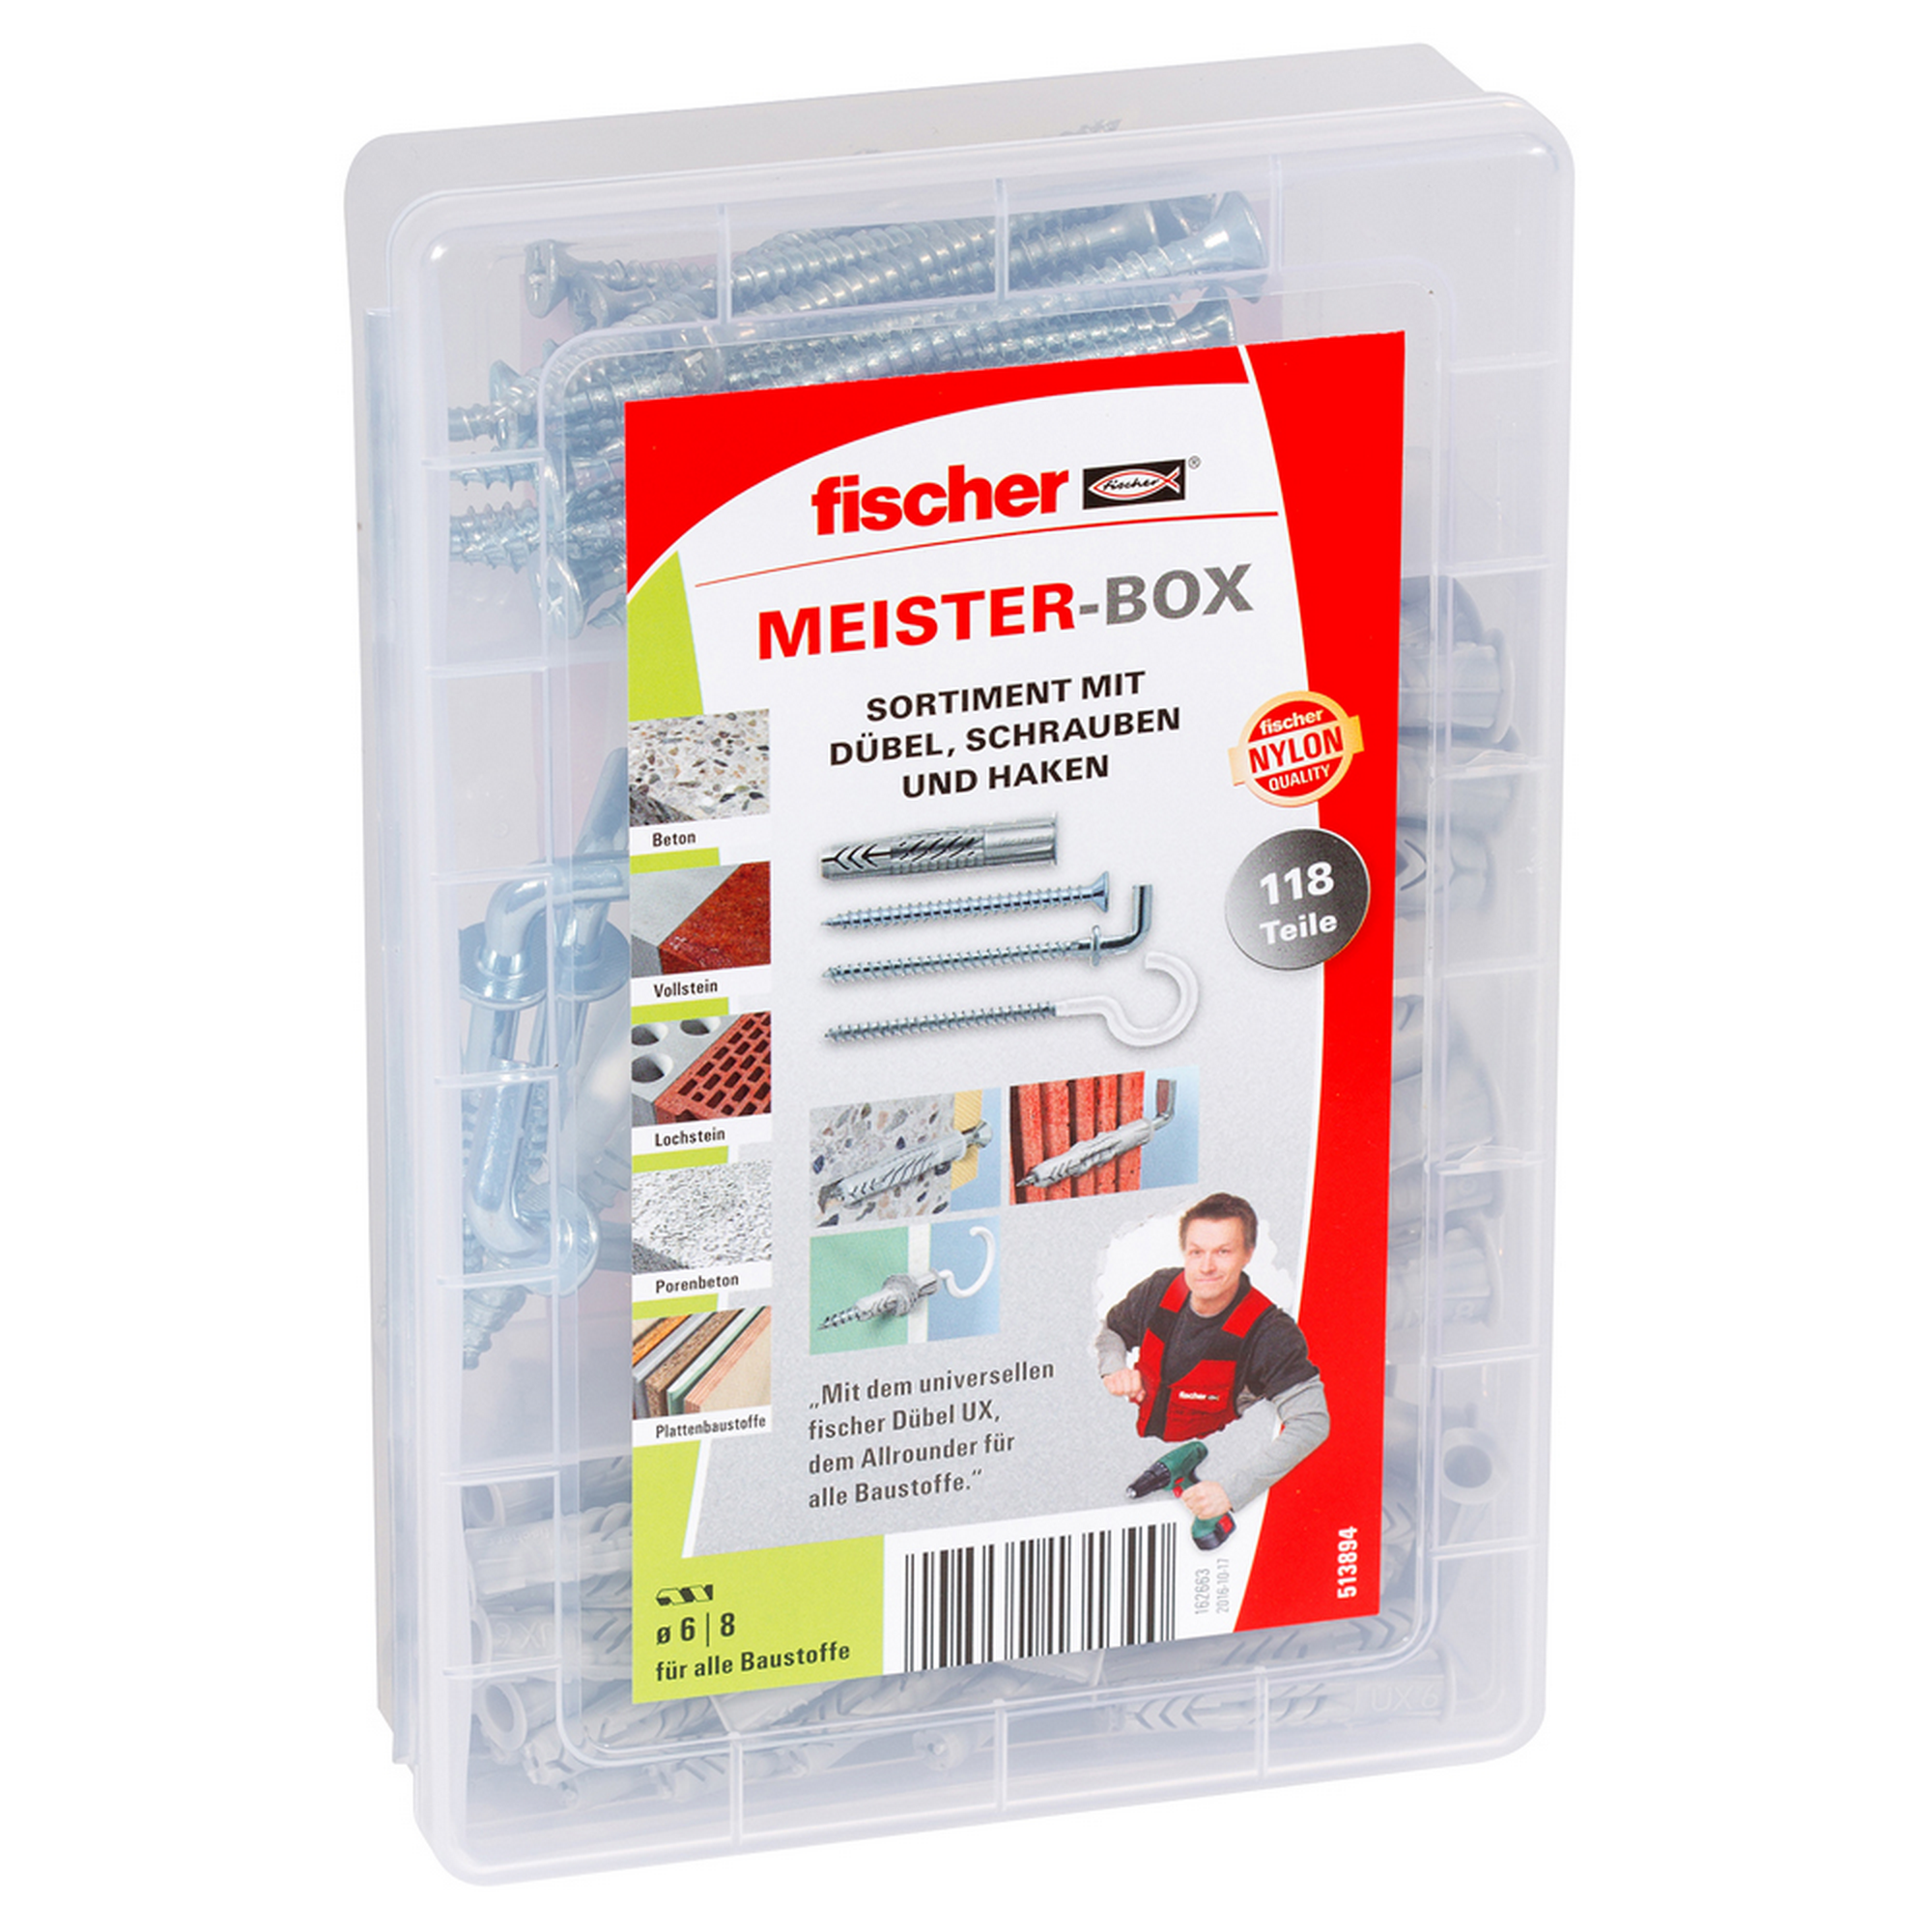 fischer Meister-Box UX mit Schrauben und Haken 118-teilig + product picture